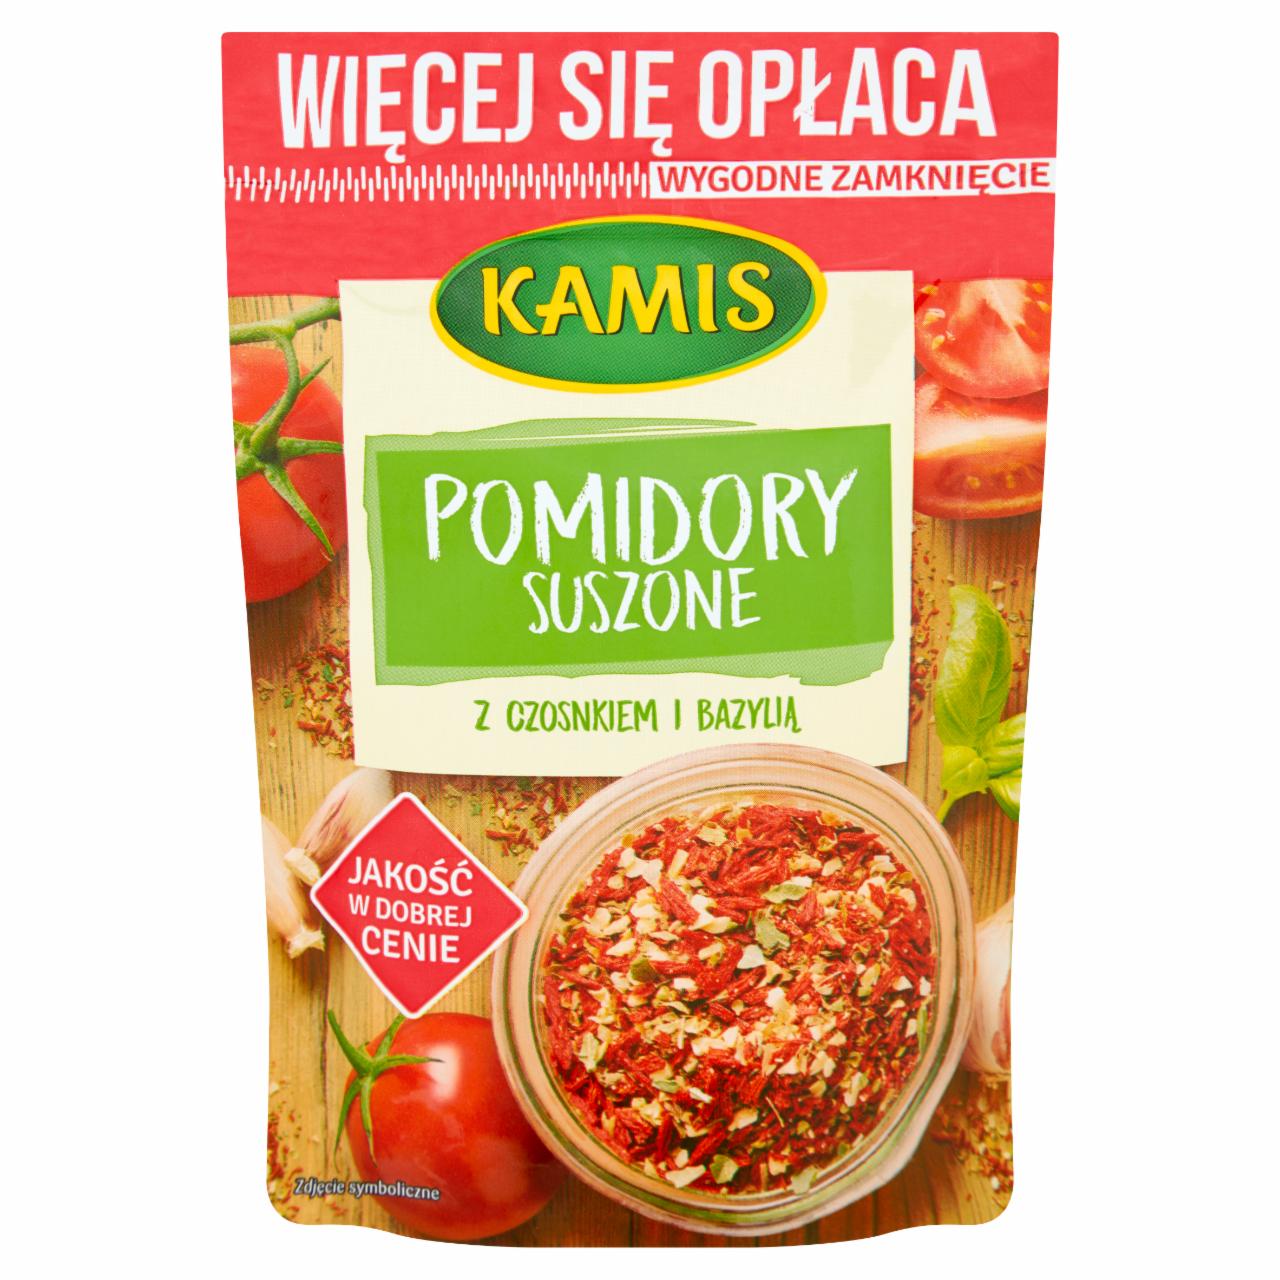 Zdjęcia - Kamis Pomidory suszone z czosnkiem i bazylią 50 g